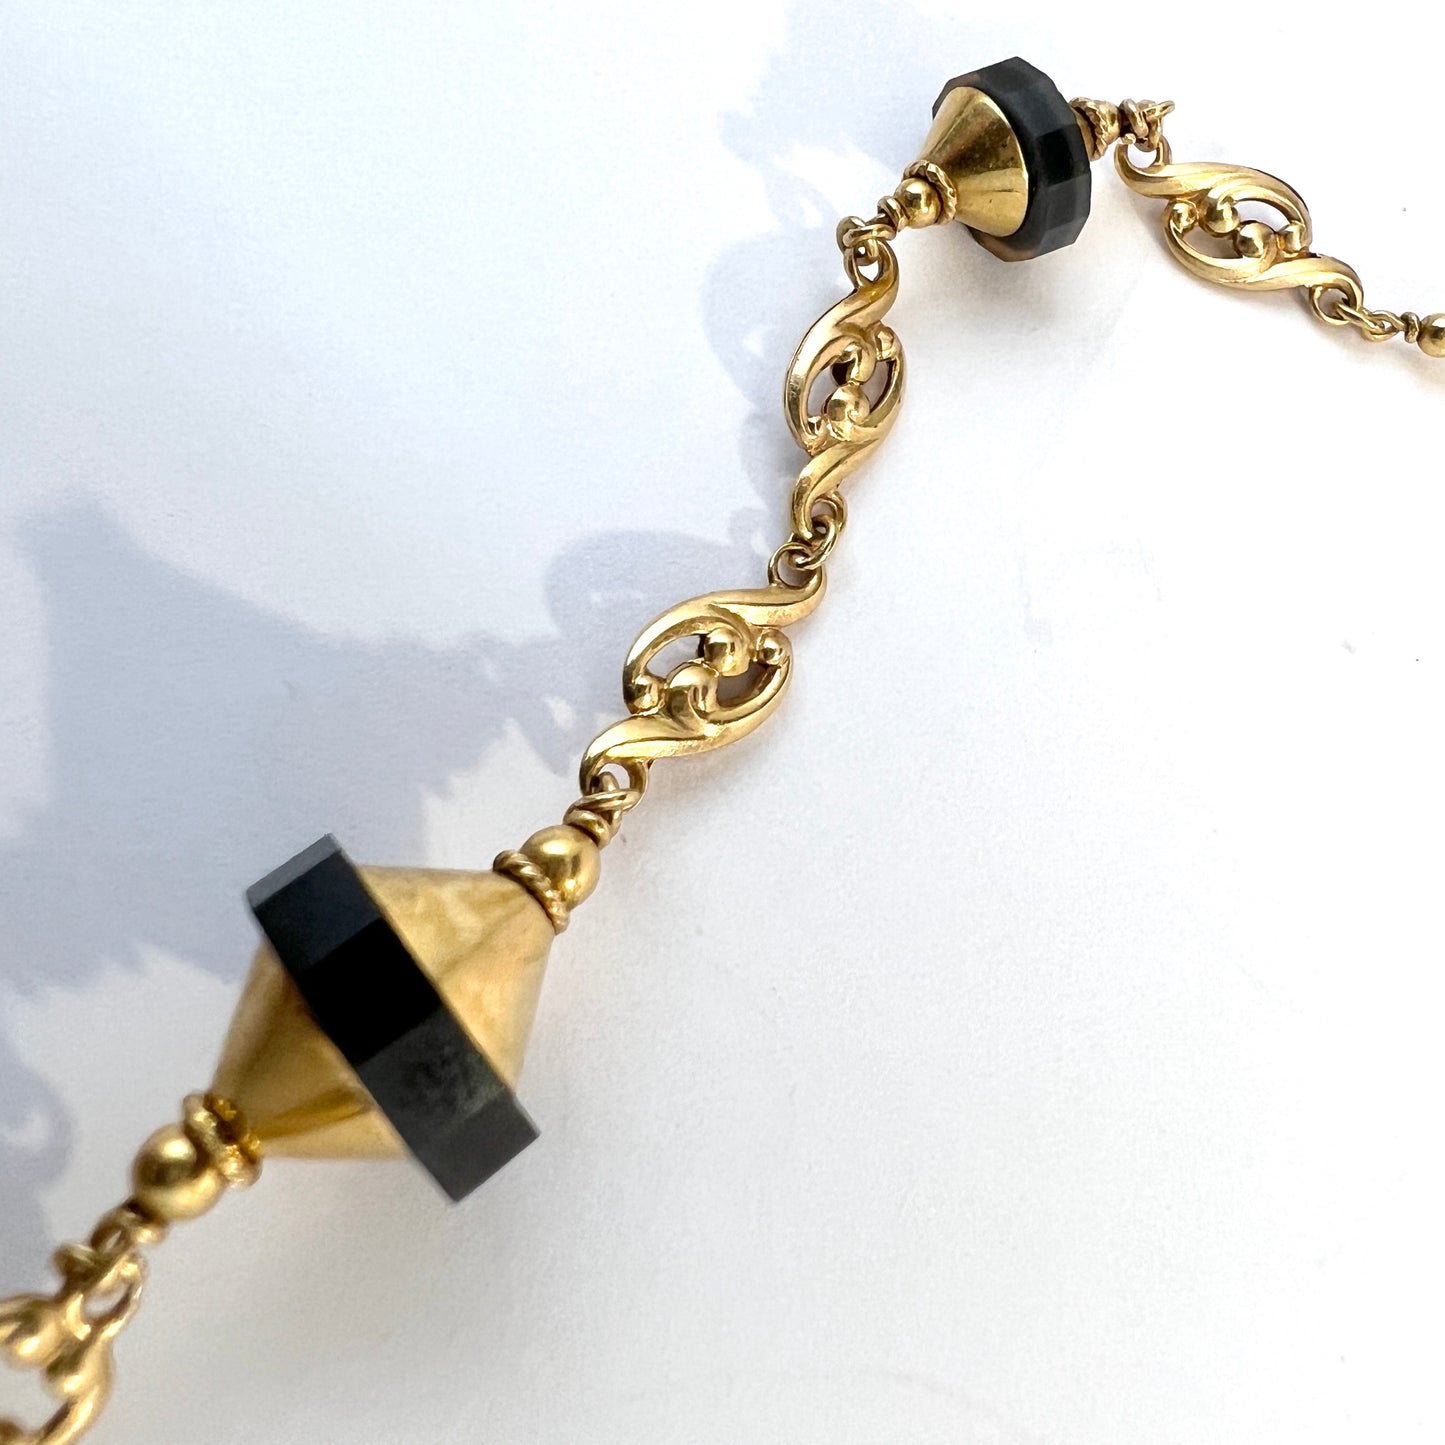 G Dahlgren, Sweden c 1920s. Art Deco 18k Gold Onyx Necklace.